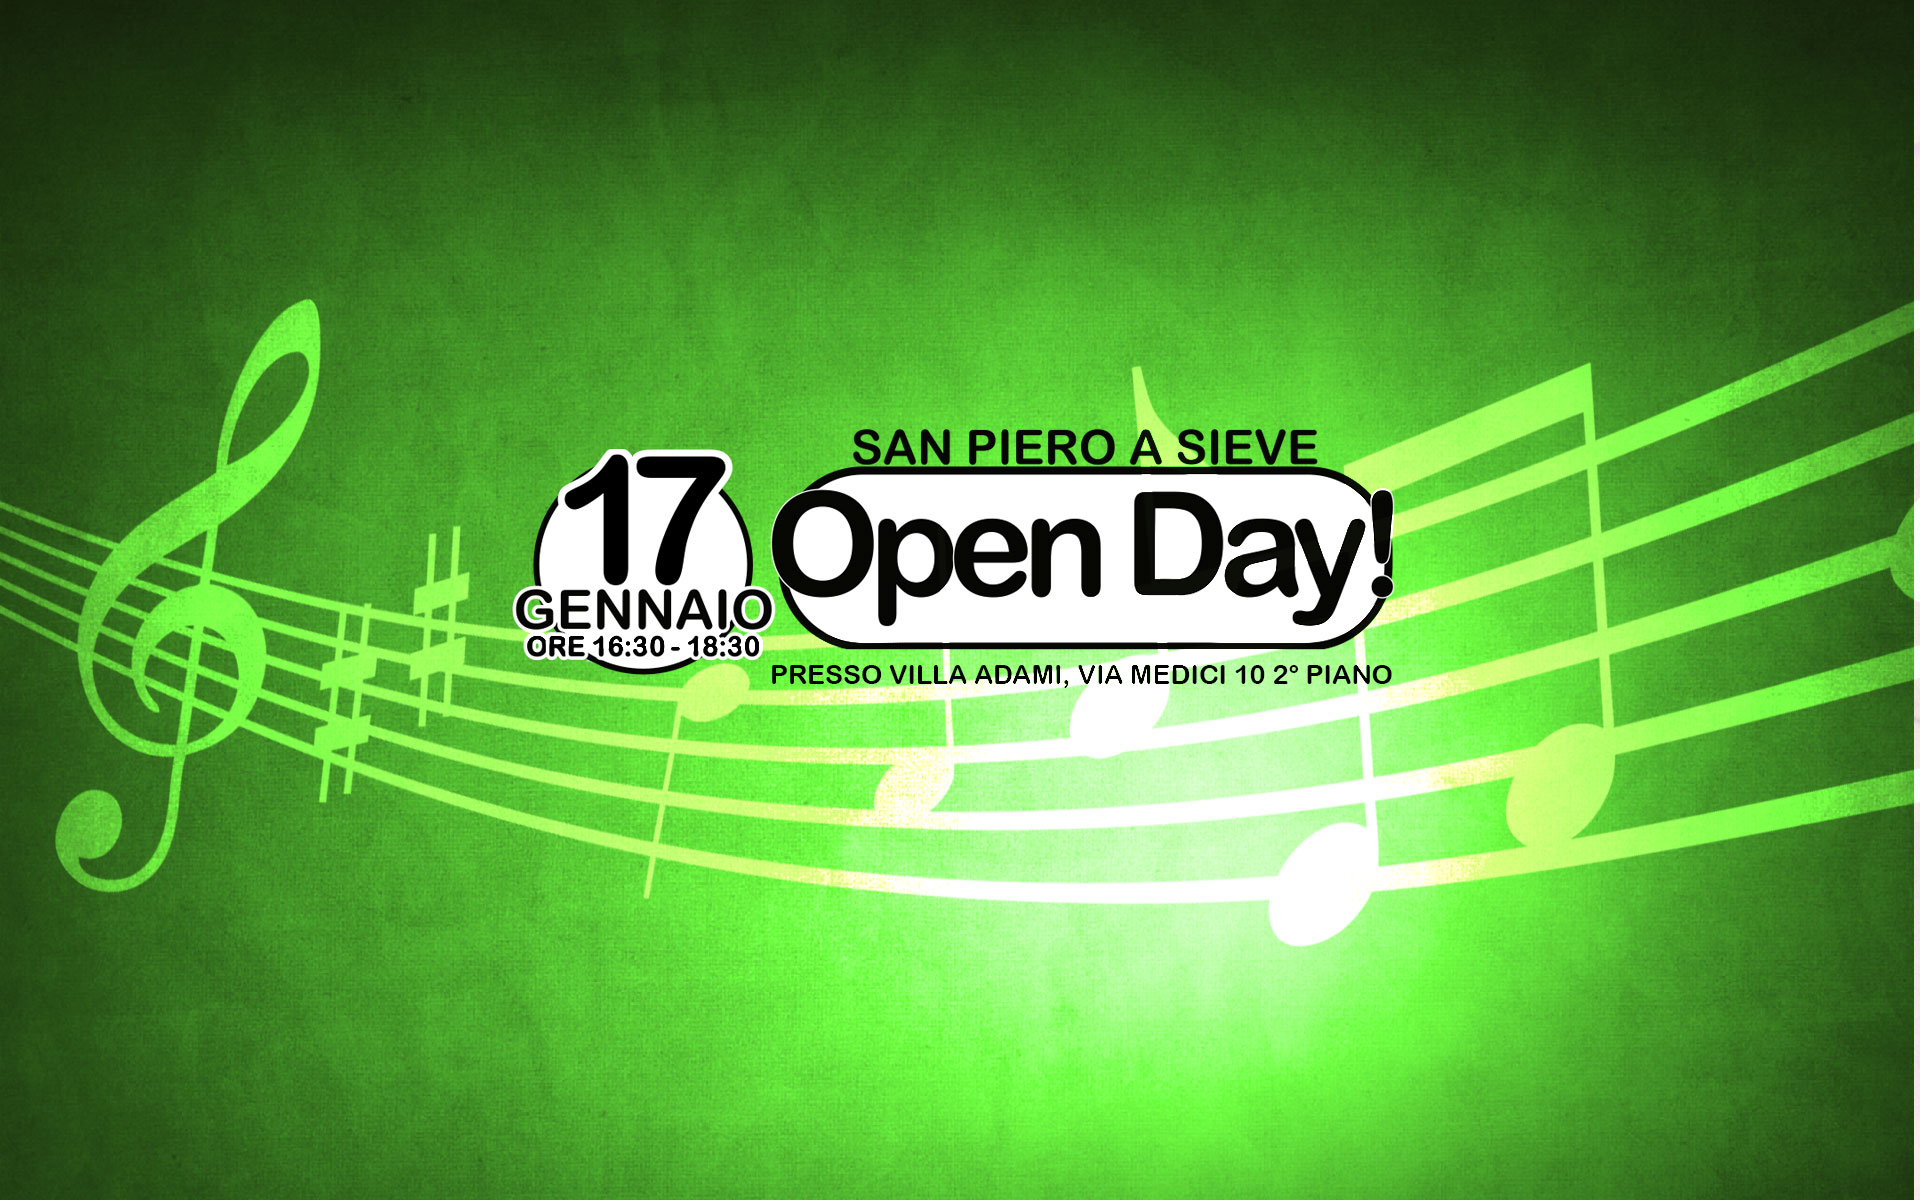 Scuola di Musica San Piero a Sieve Open Day 17 Gennaio